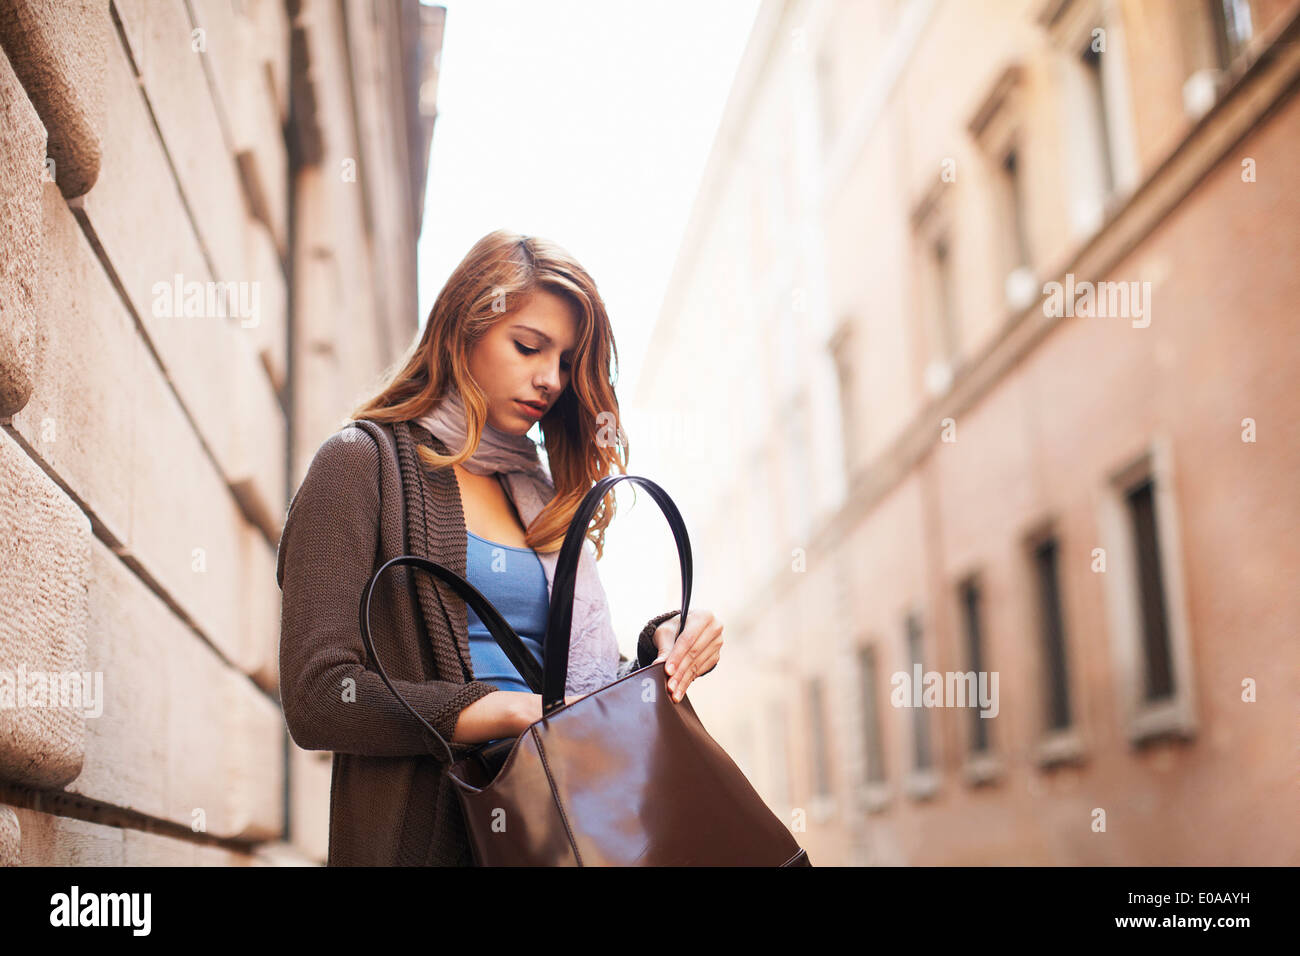 Mujer joven busca ansiosamente su bolsa de hombro Foto de stock